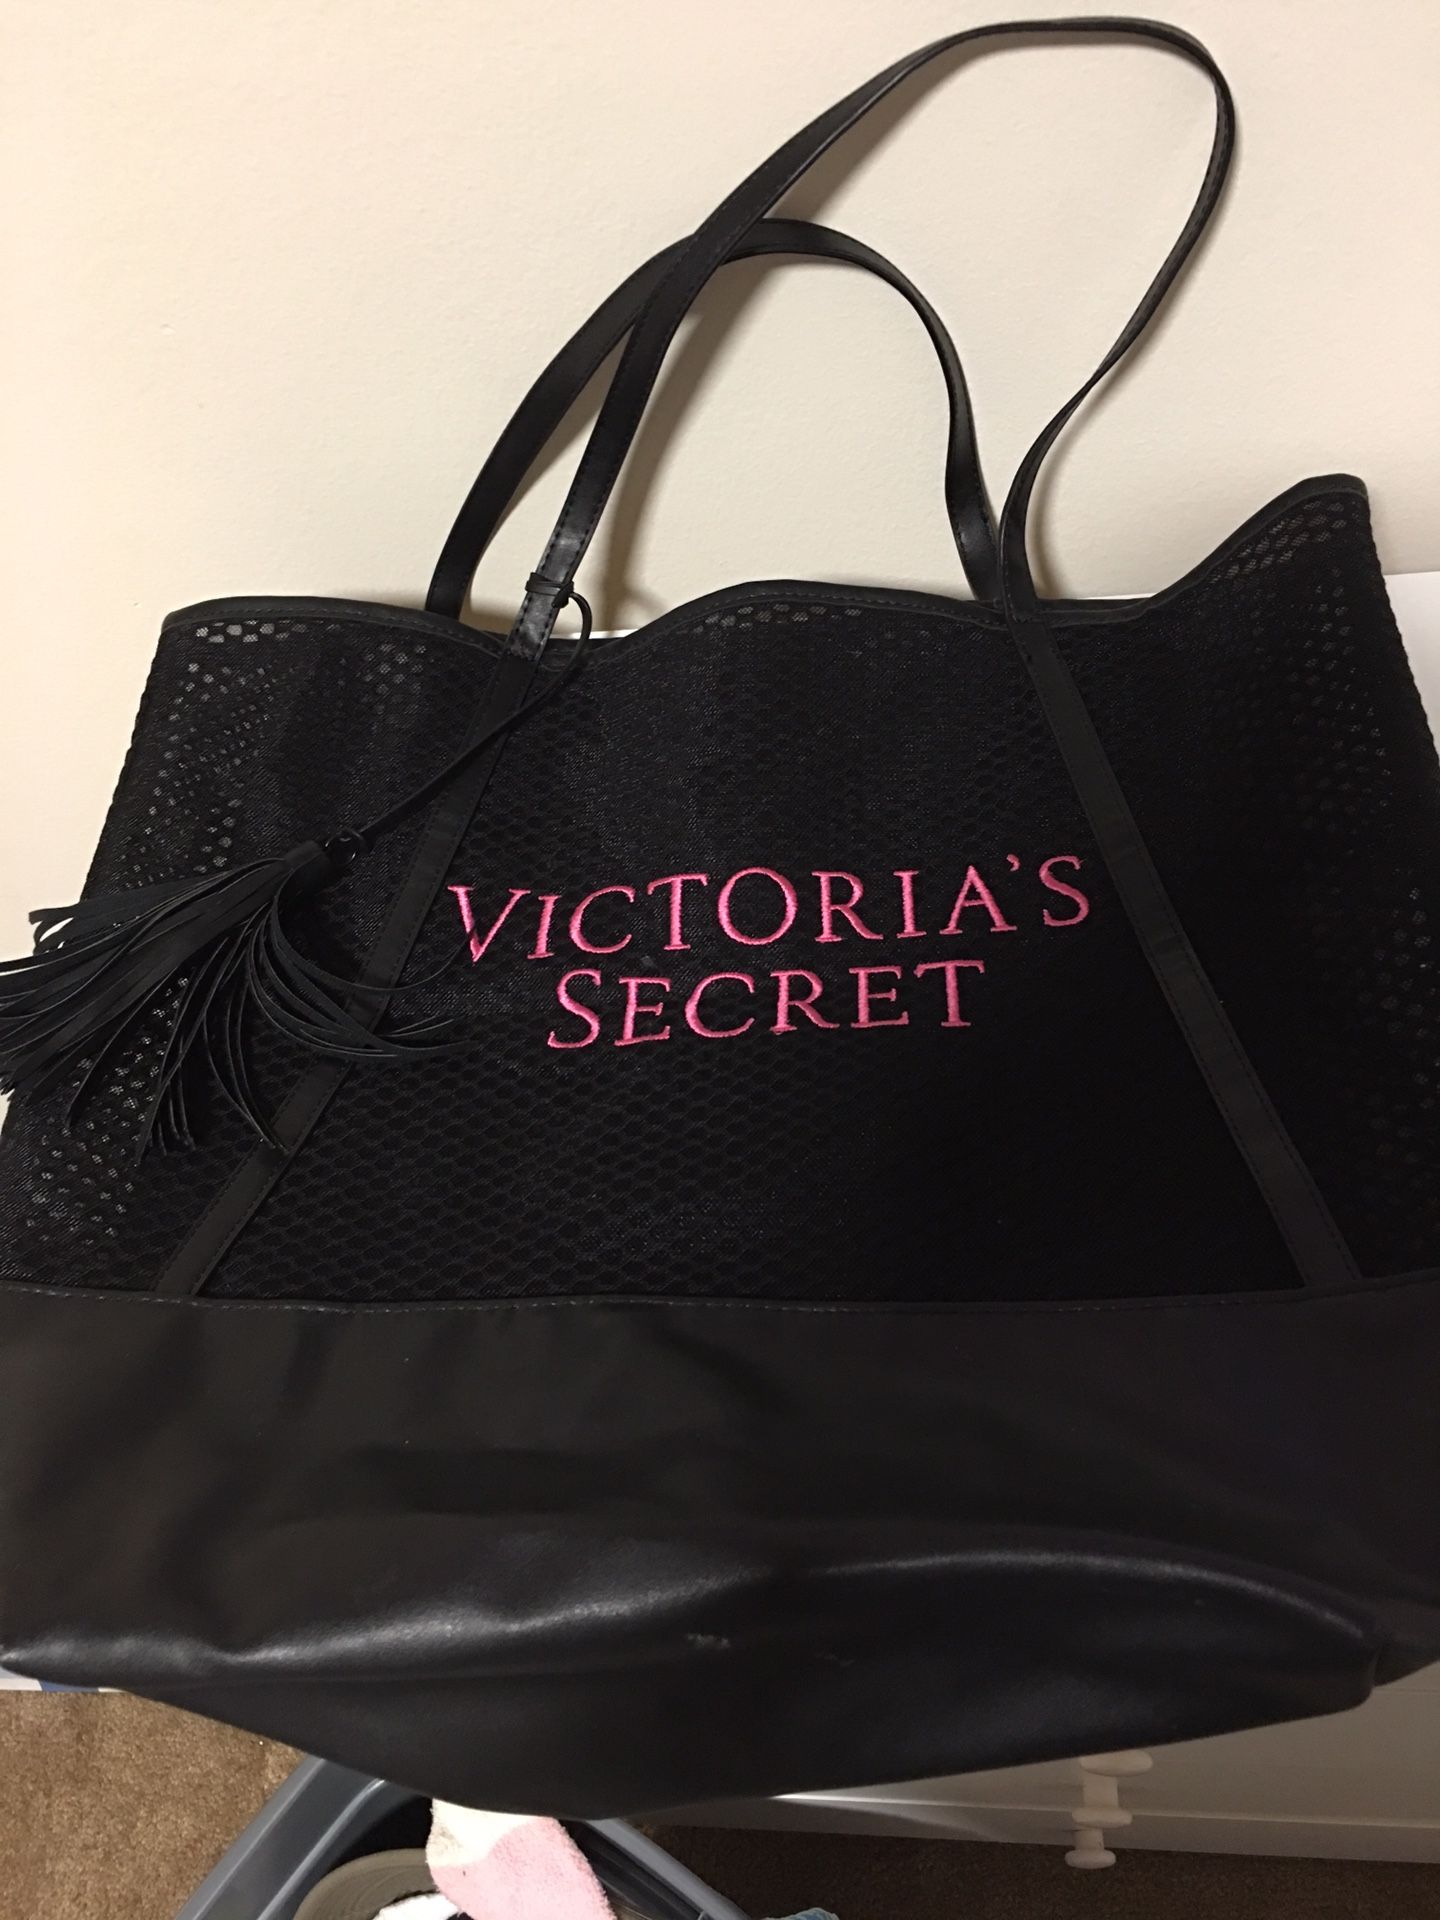 Victoria secret bag $5